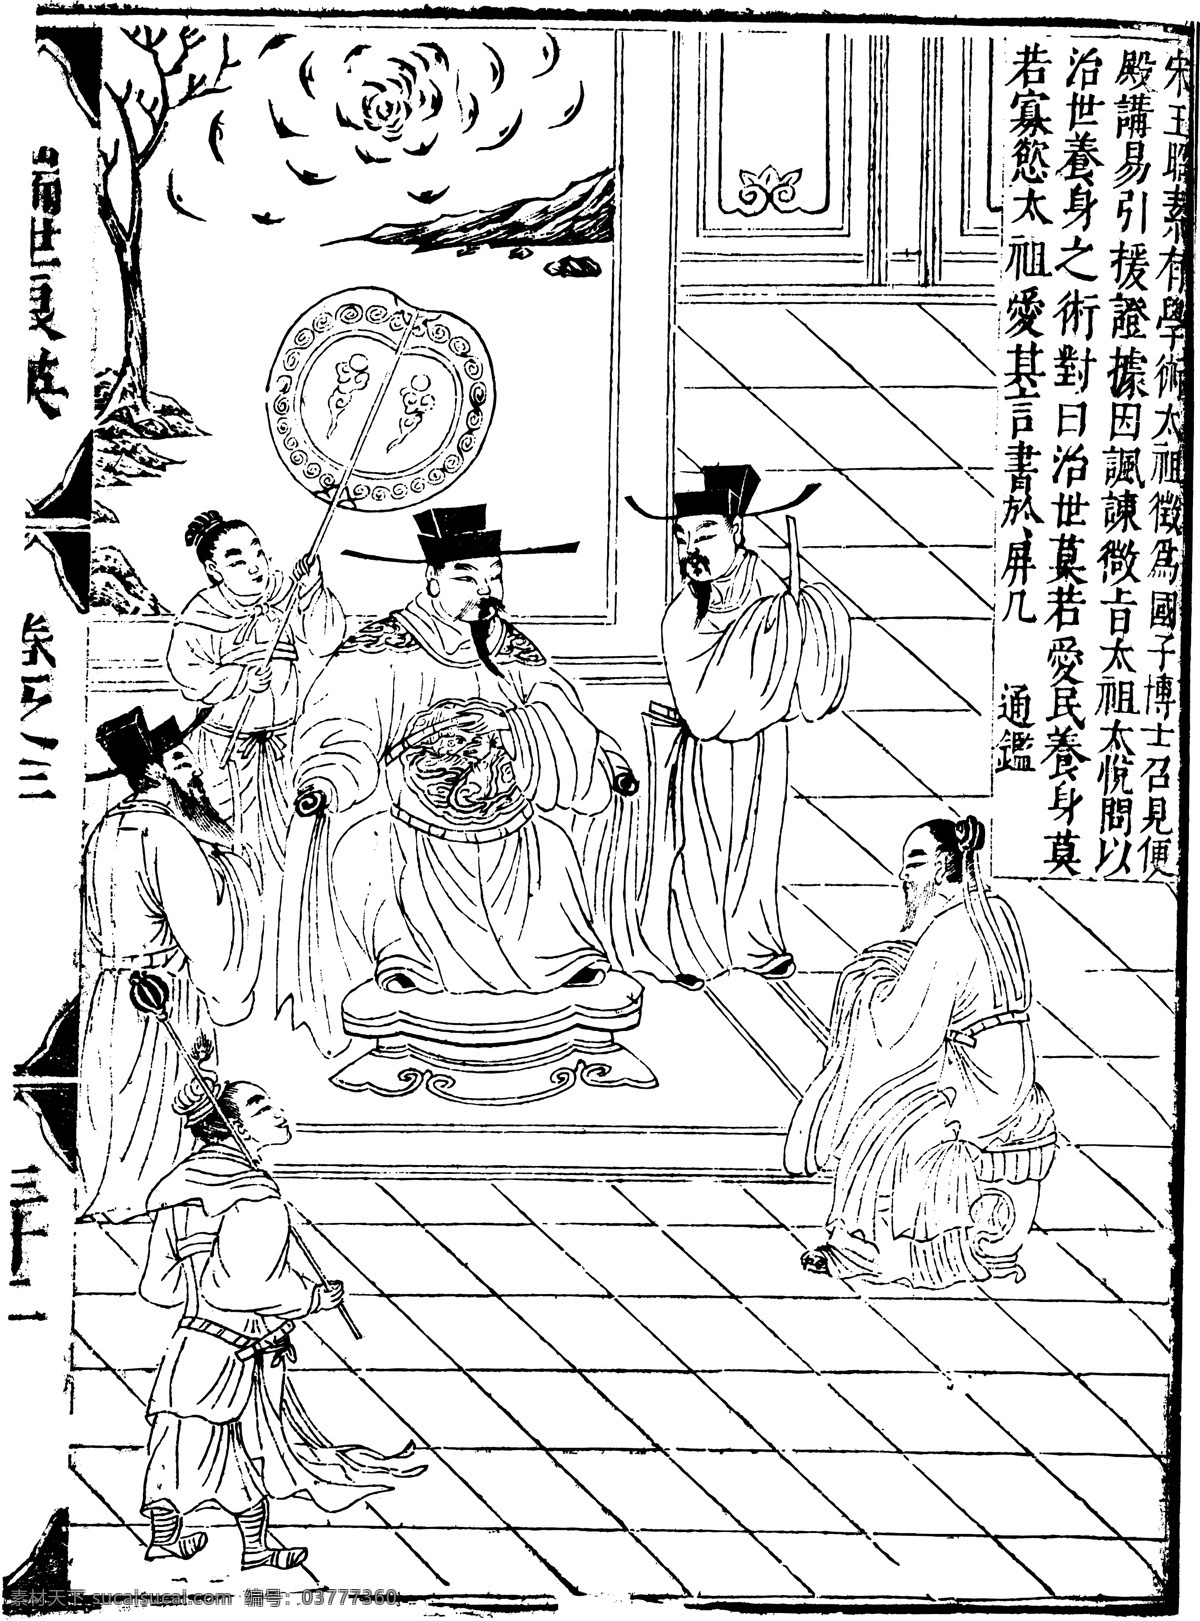 瑞世良英 木刻版画 中国 传统文化 71 中国传统文化 设计素材 版画世界 书画美术 白色